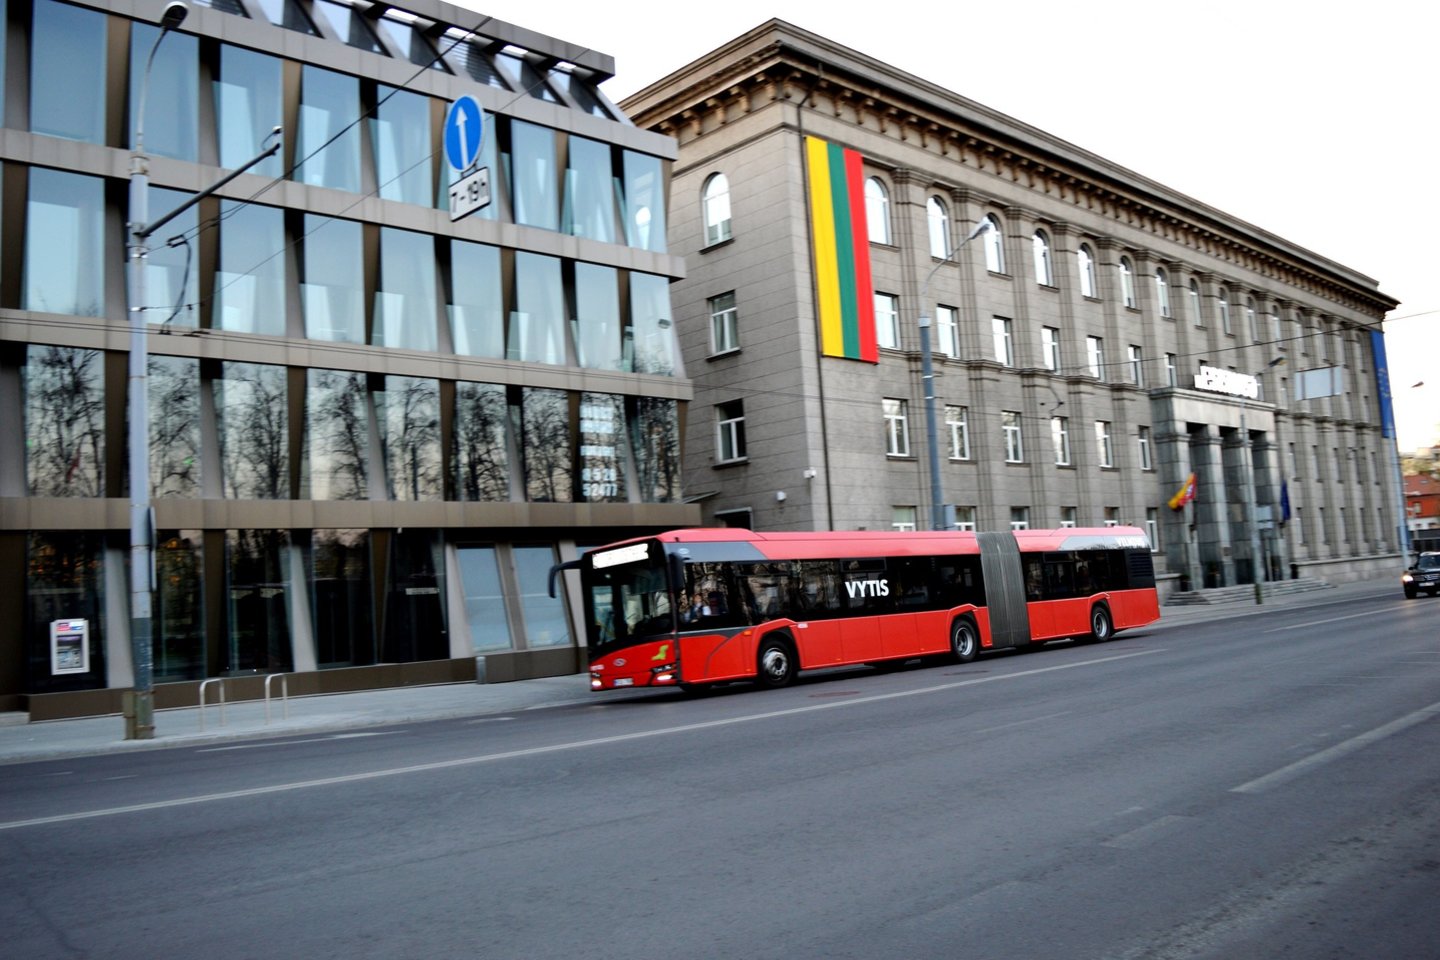 Liepos 6 d. viešasis transportas Vilniuje važiuos pagal sekmadienio ir šventinės dienos tvarkaraščius.<br>Pranešėjų spaudai nuotr.